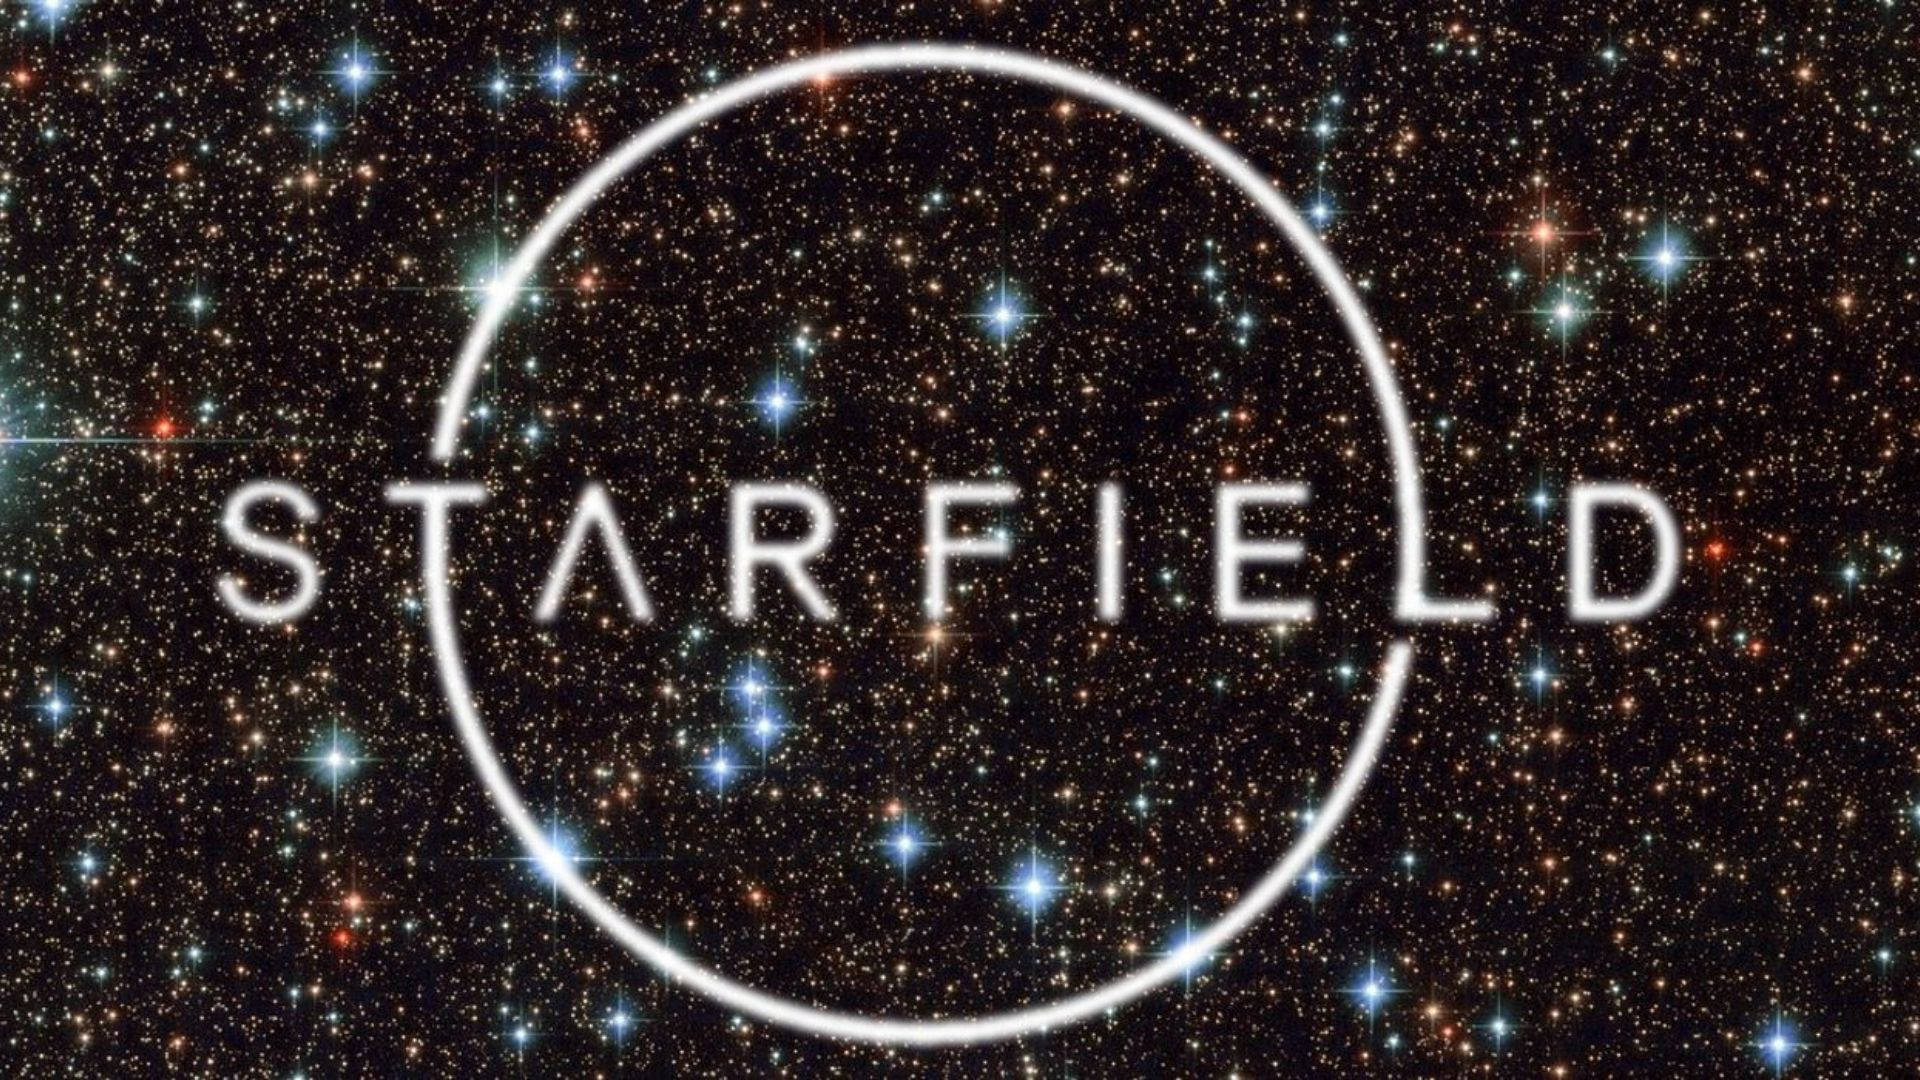 Starfield In Starry Sky Wallpaper